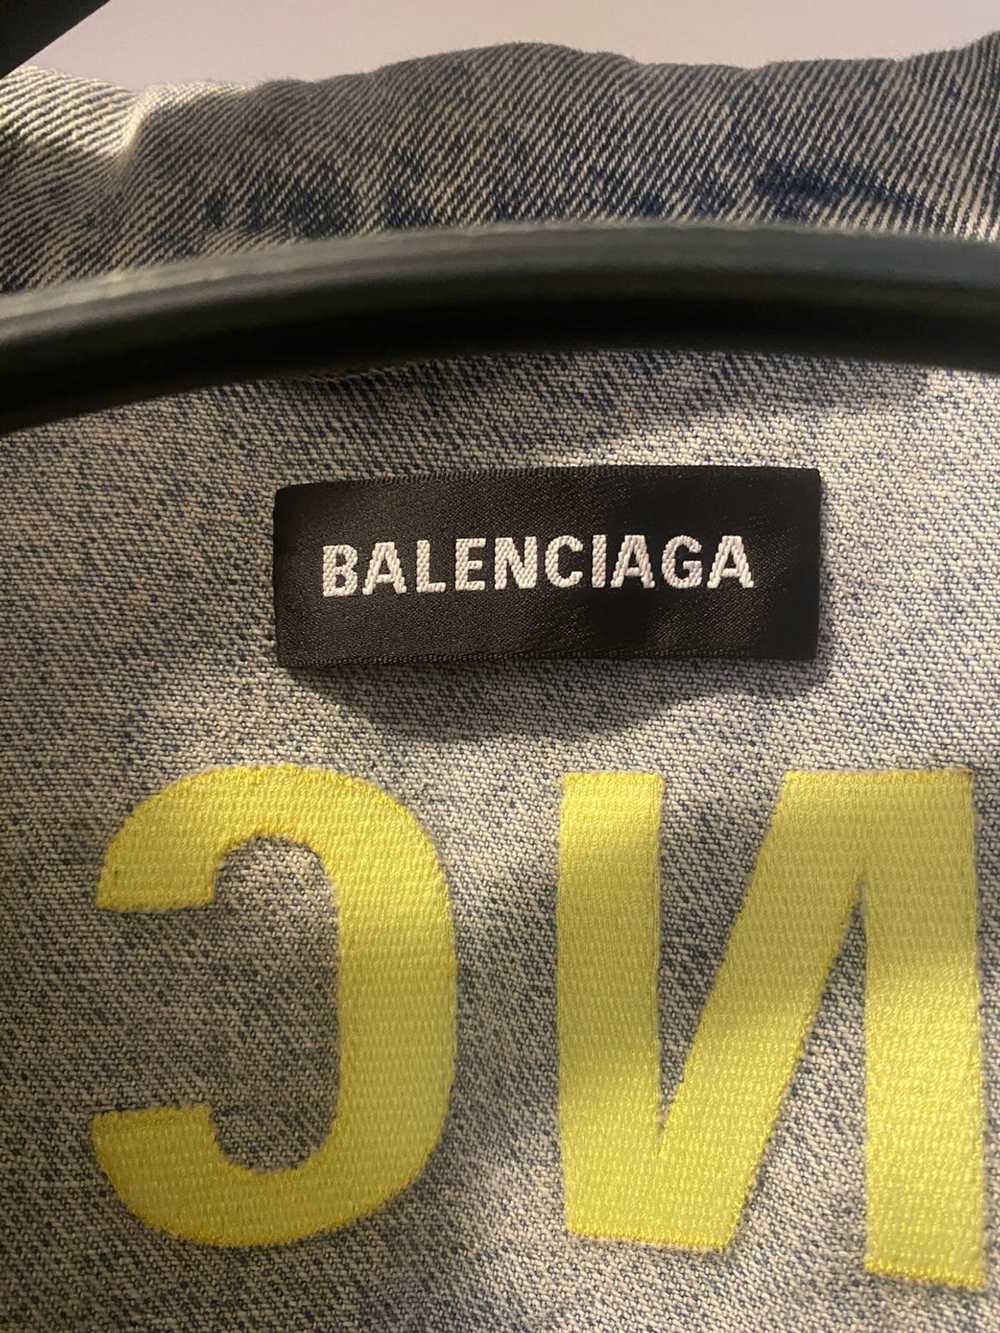 Balenciaga Balenciaga Denim Jacket - image 3